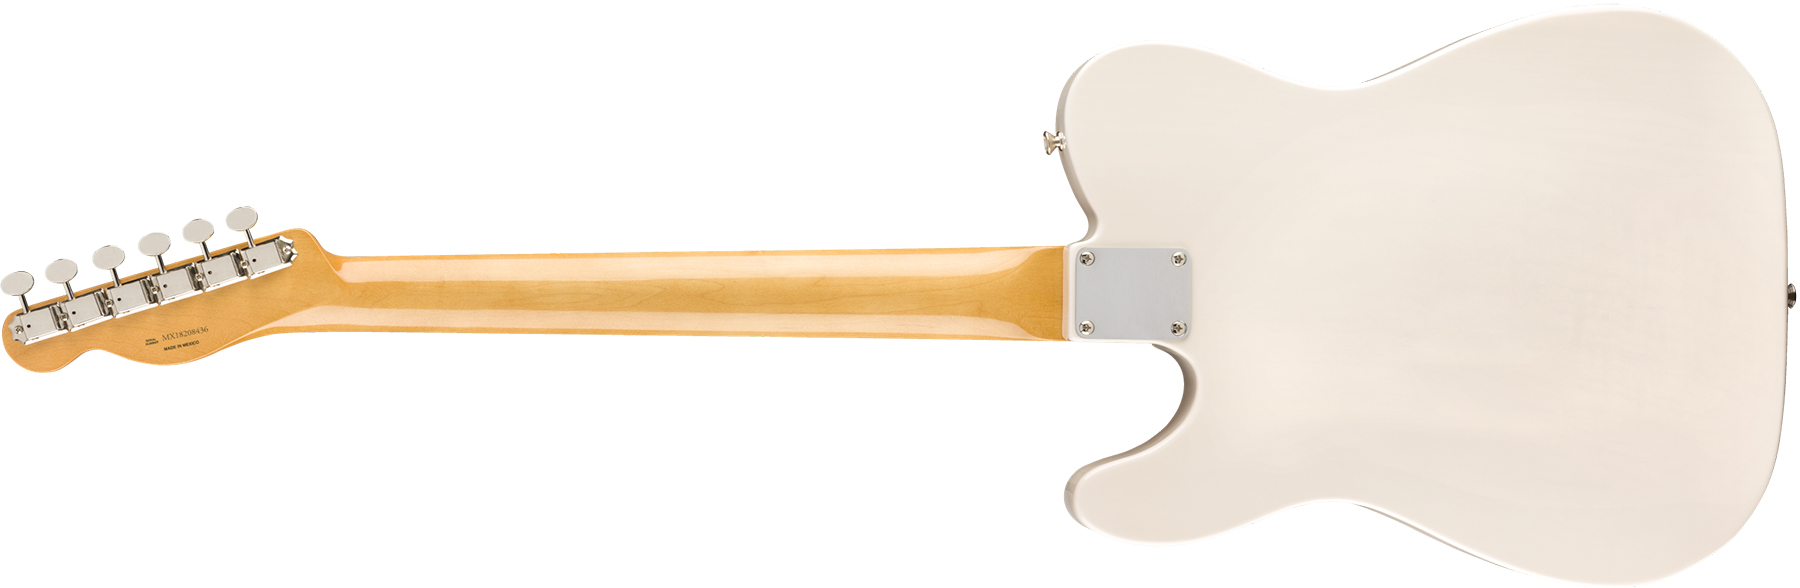 Fender Tele 60s Bigsby Vintera Vintage Mex Pf - White Blonde - Televorm elektrische gitaar - Variation 1